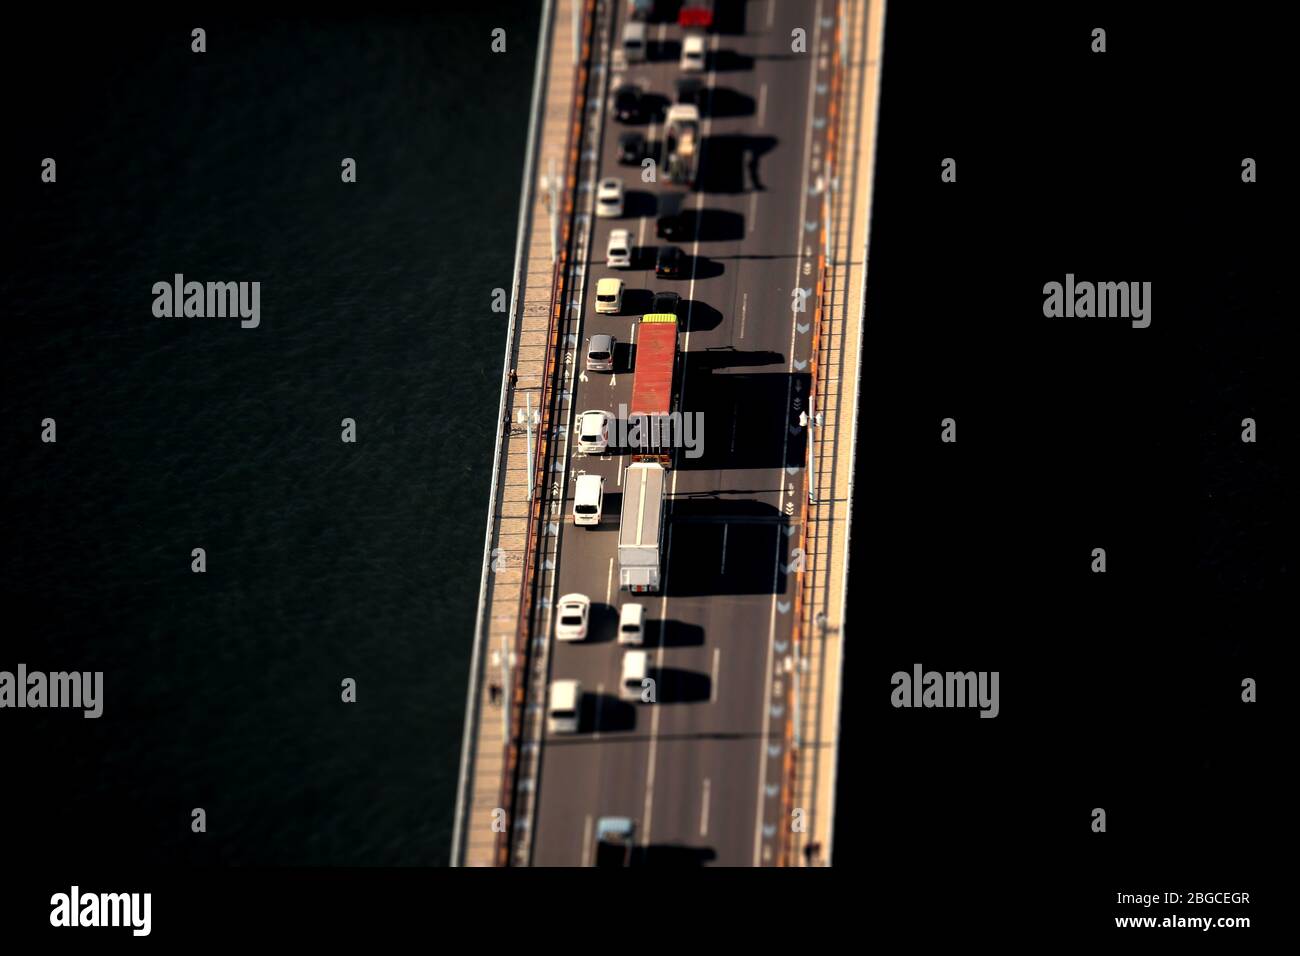 Ein Diorama-Foto von der Verkehrssituation der Autos, die die Brücke überqueren, von oben gesehen Stockfoto